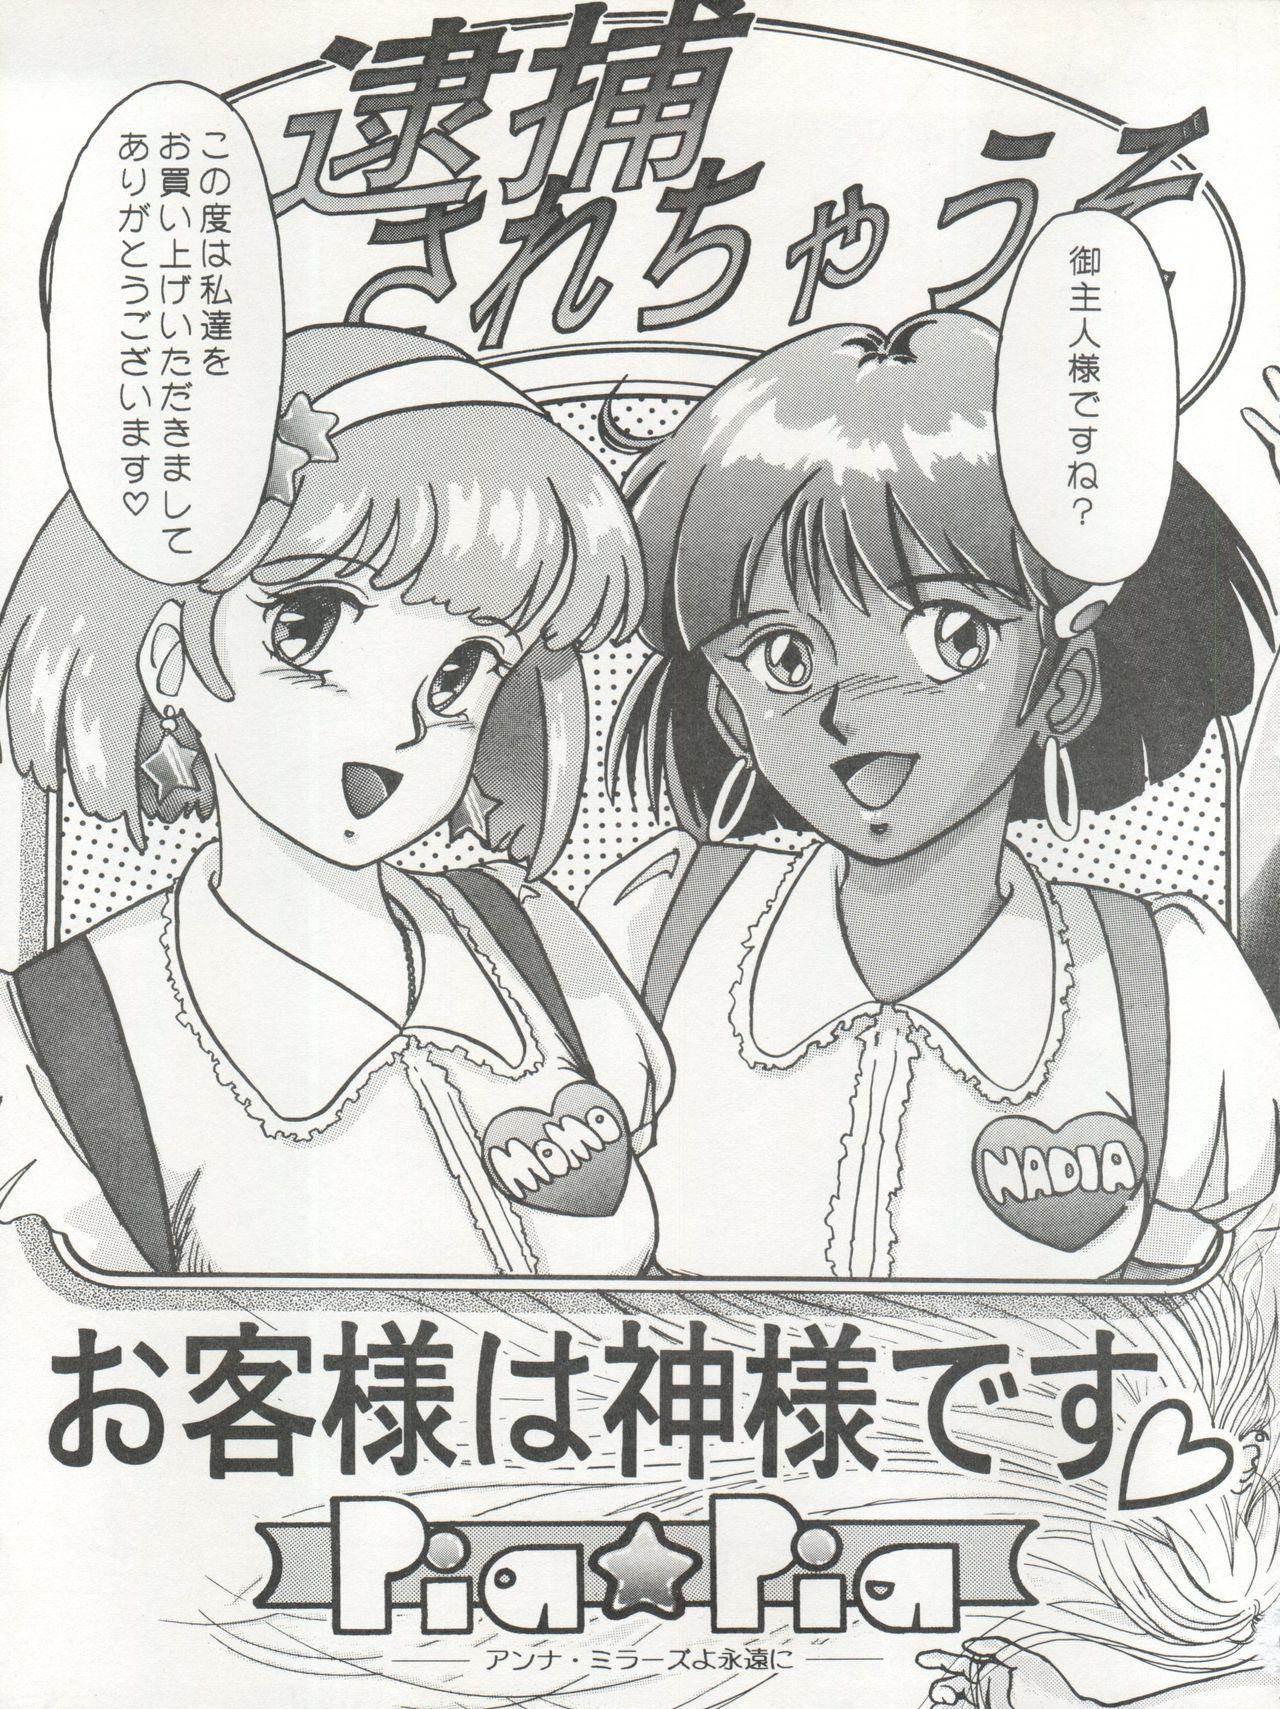 Concha 逮捕されちゃうぞ - Fushigi no umi no nadia Youre under arrest Minky momo 3x3 eyes Negra - Page 3